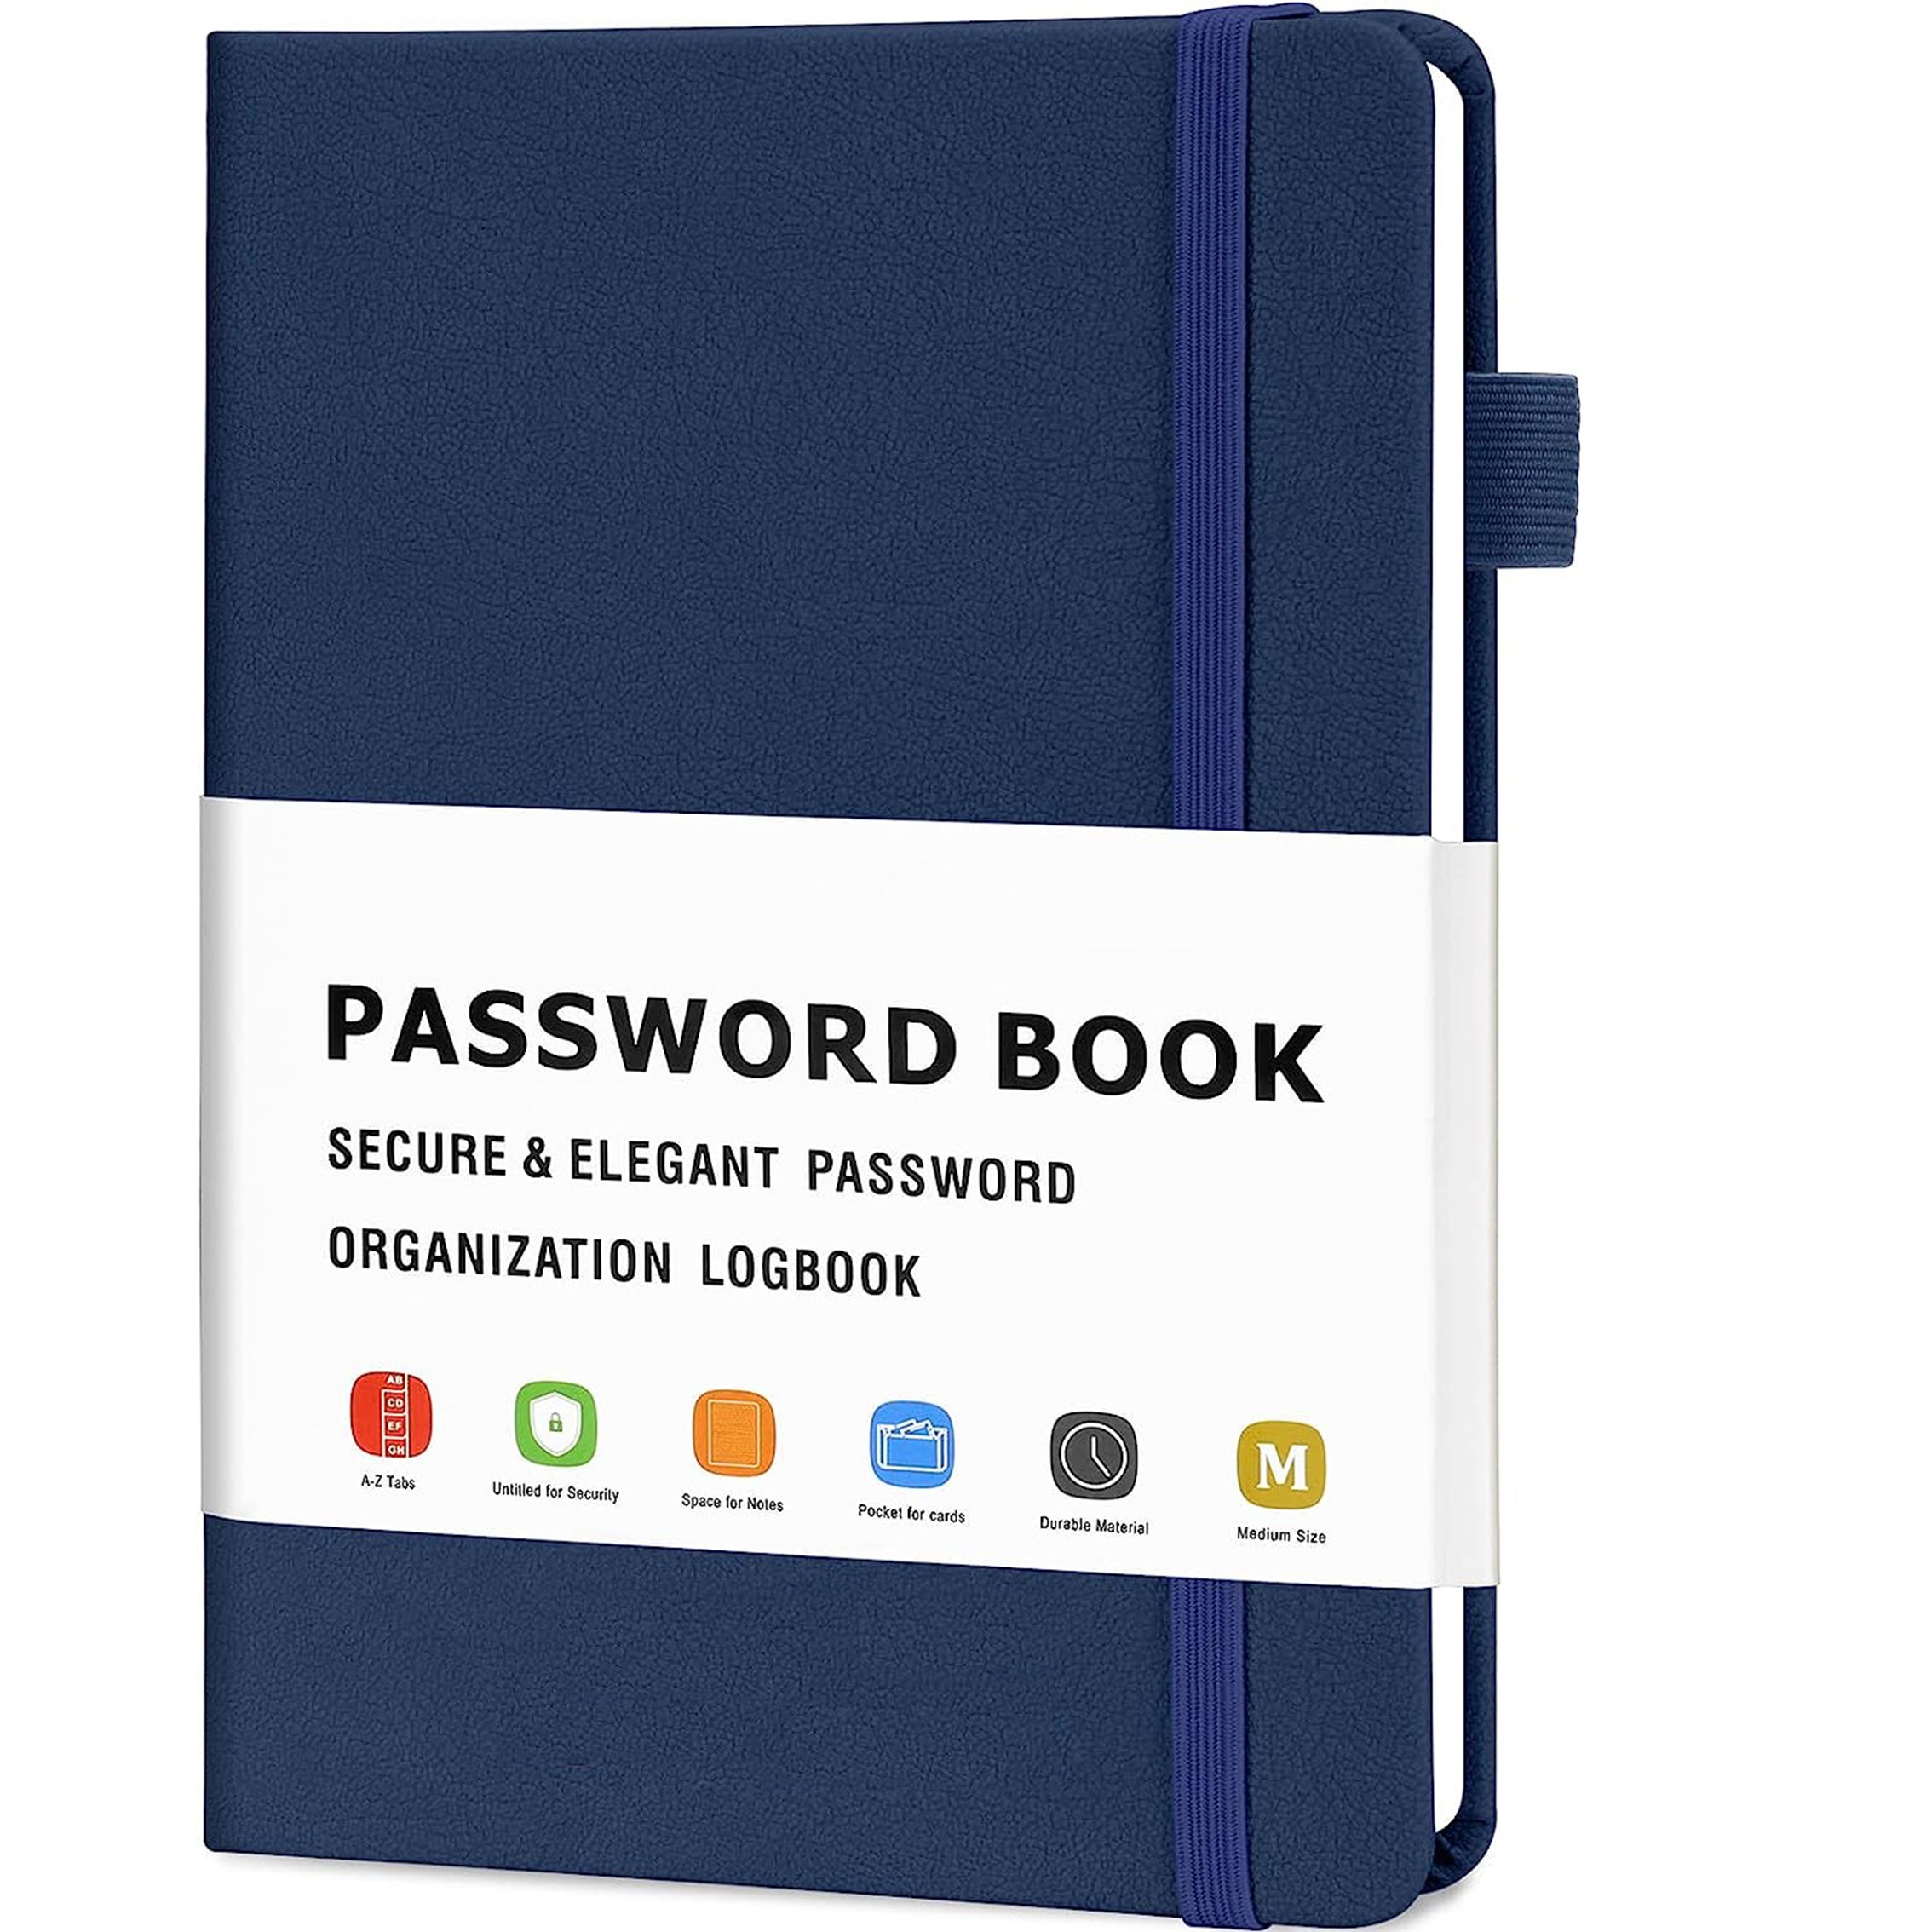 Password Libro: Agenda per password, regalo perfetto per festa della mama,  papà, nonni  formato tascabile (Il Quaderno delle Password) (Italian